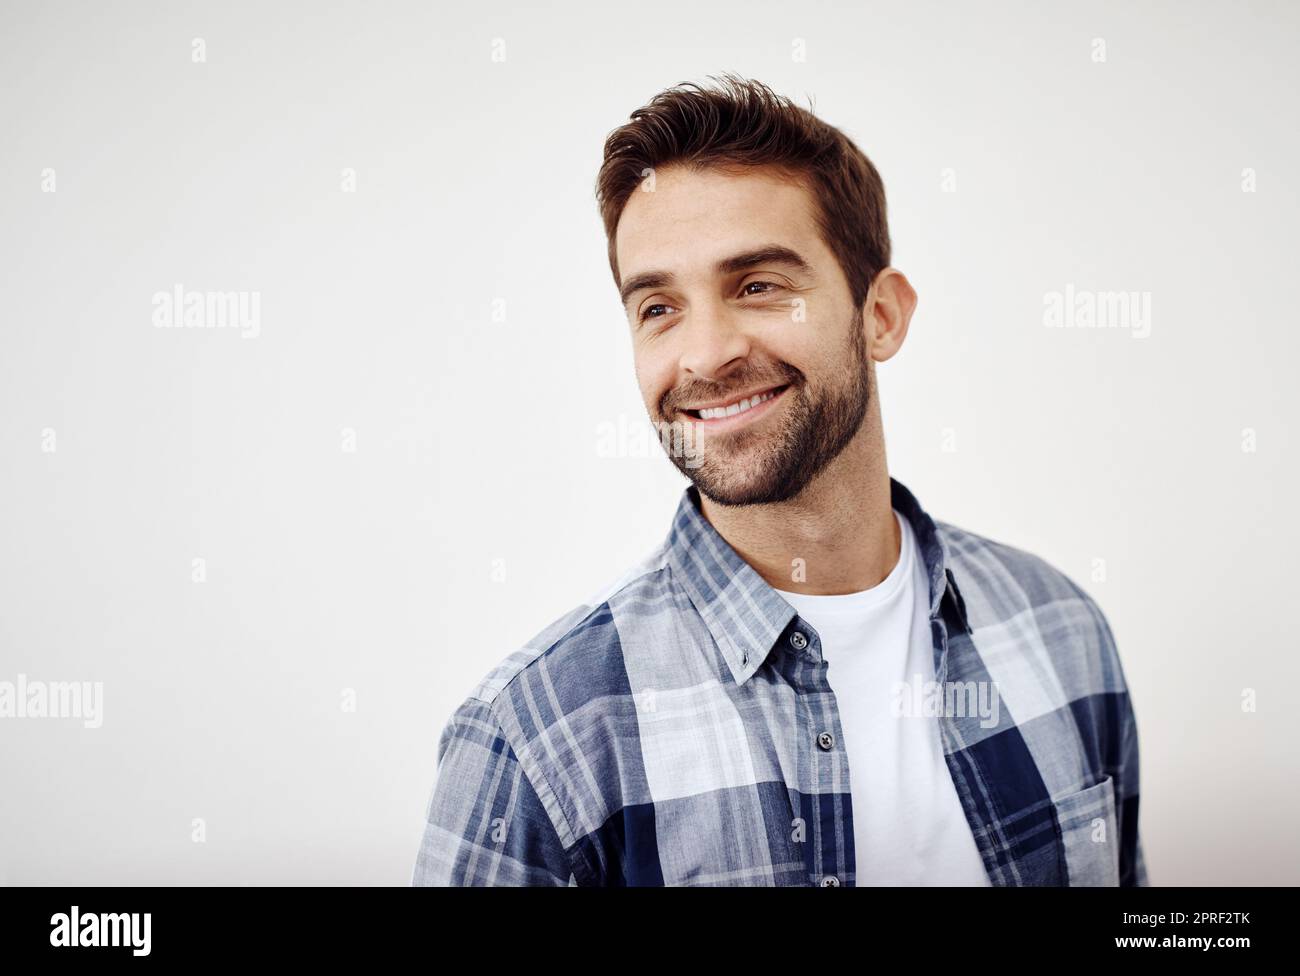 Lächelnd an eine Erinnerung. Studioaufnahme eines fröhlichen jungen Mannes, der vor einem weißen Hintergrund steht und direkt auf die Kamera blickt. Stockfoto